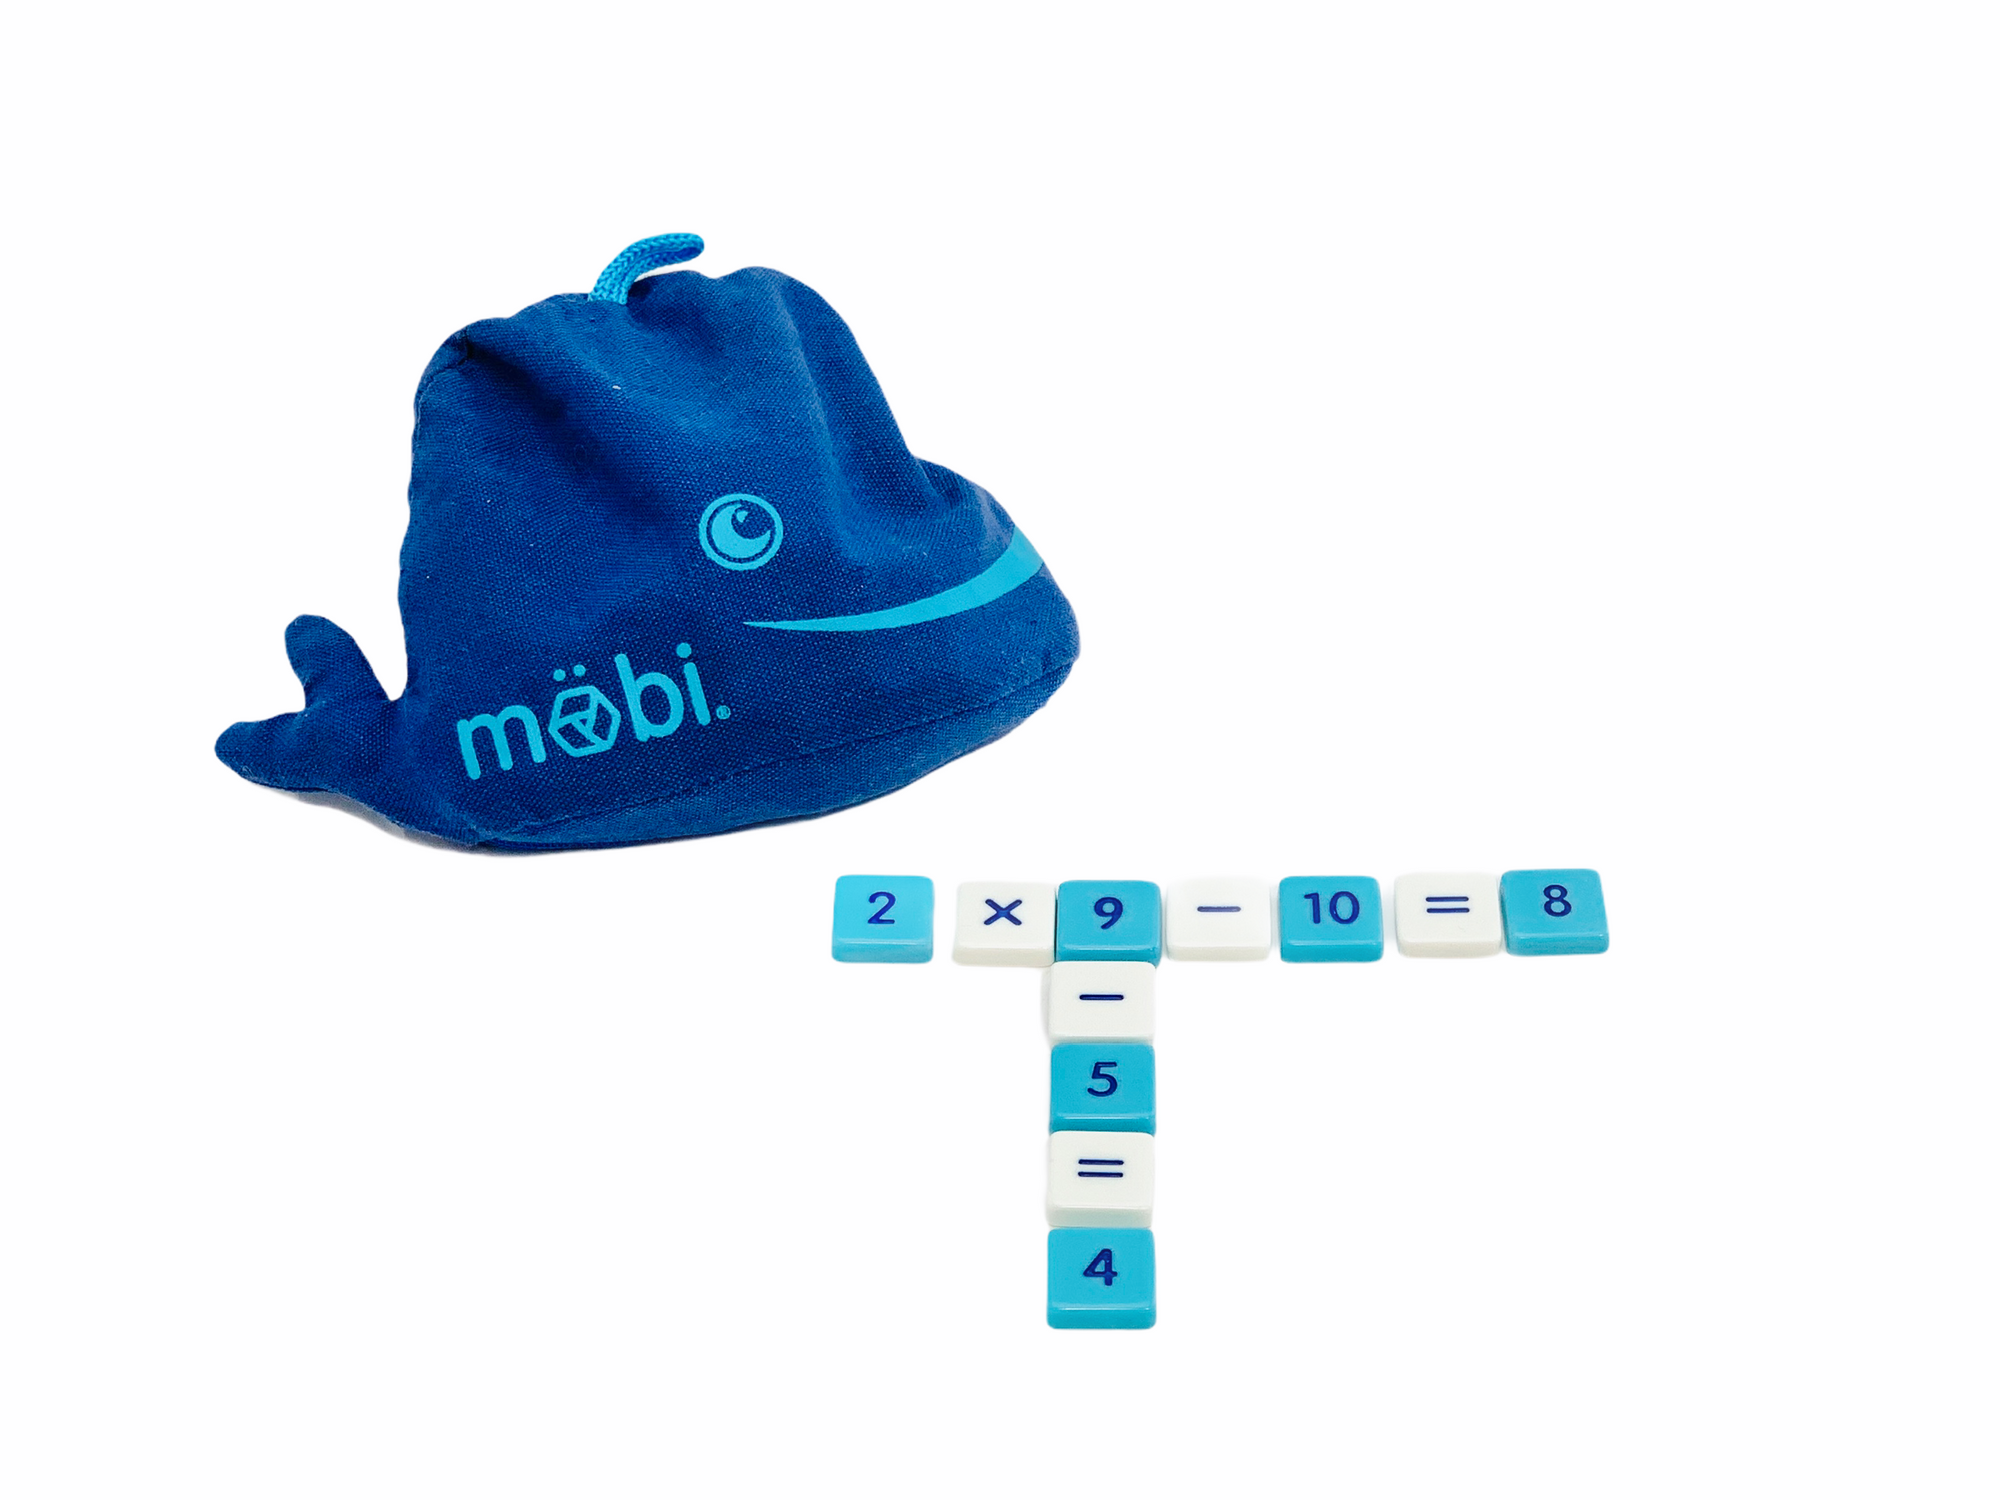 Mobi Maths Game storage bag sitting behind an equation set from the Mobi Maths Game 